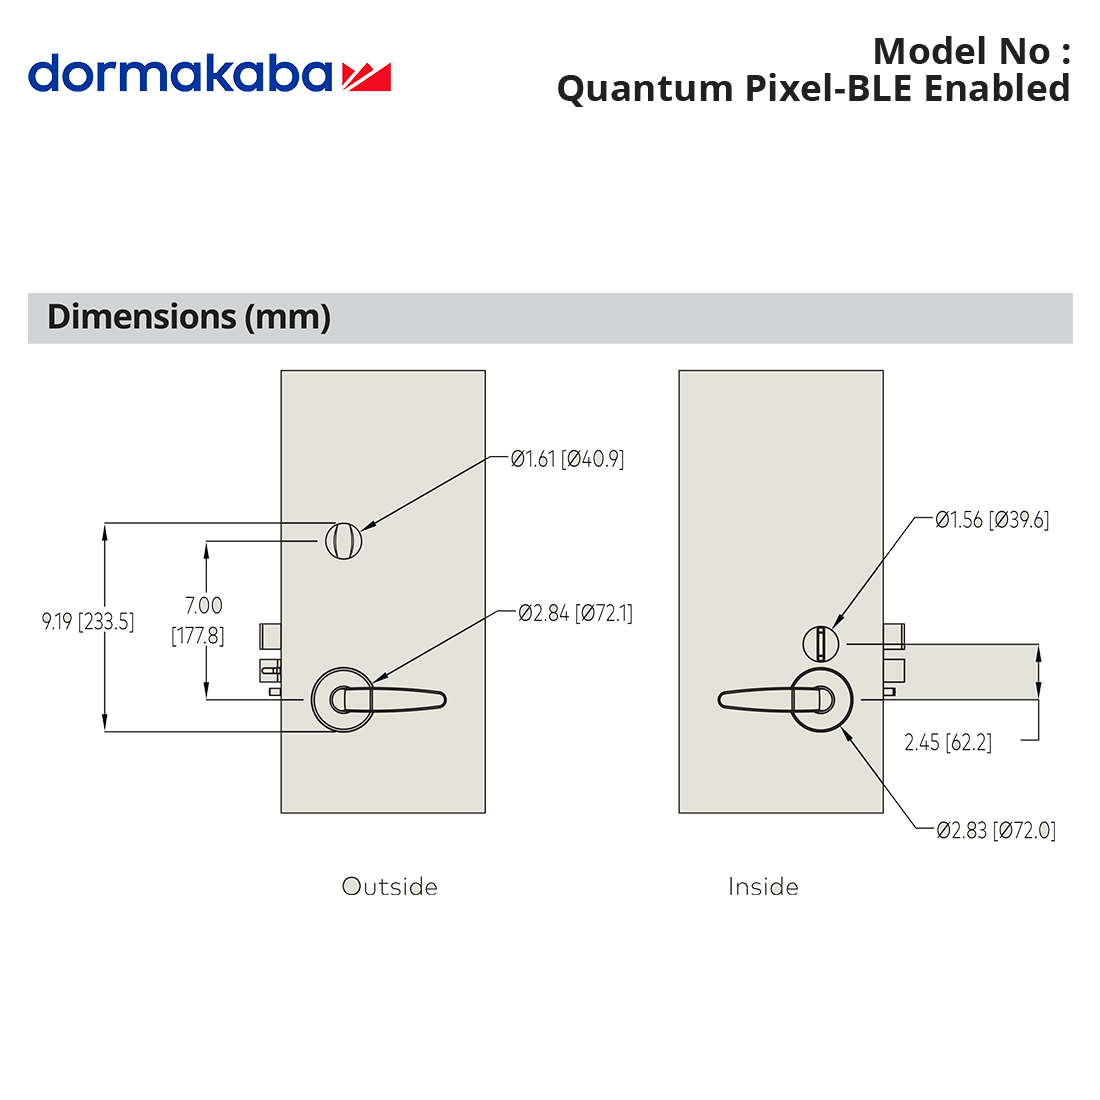 Quantum Pixel-BLE Enabled Dimensions